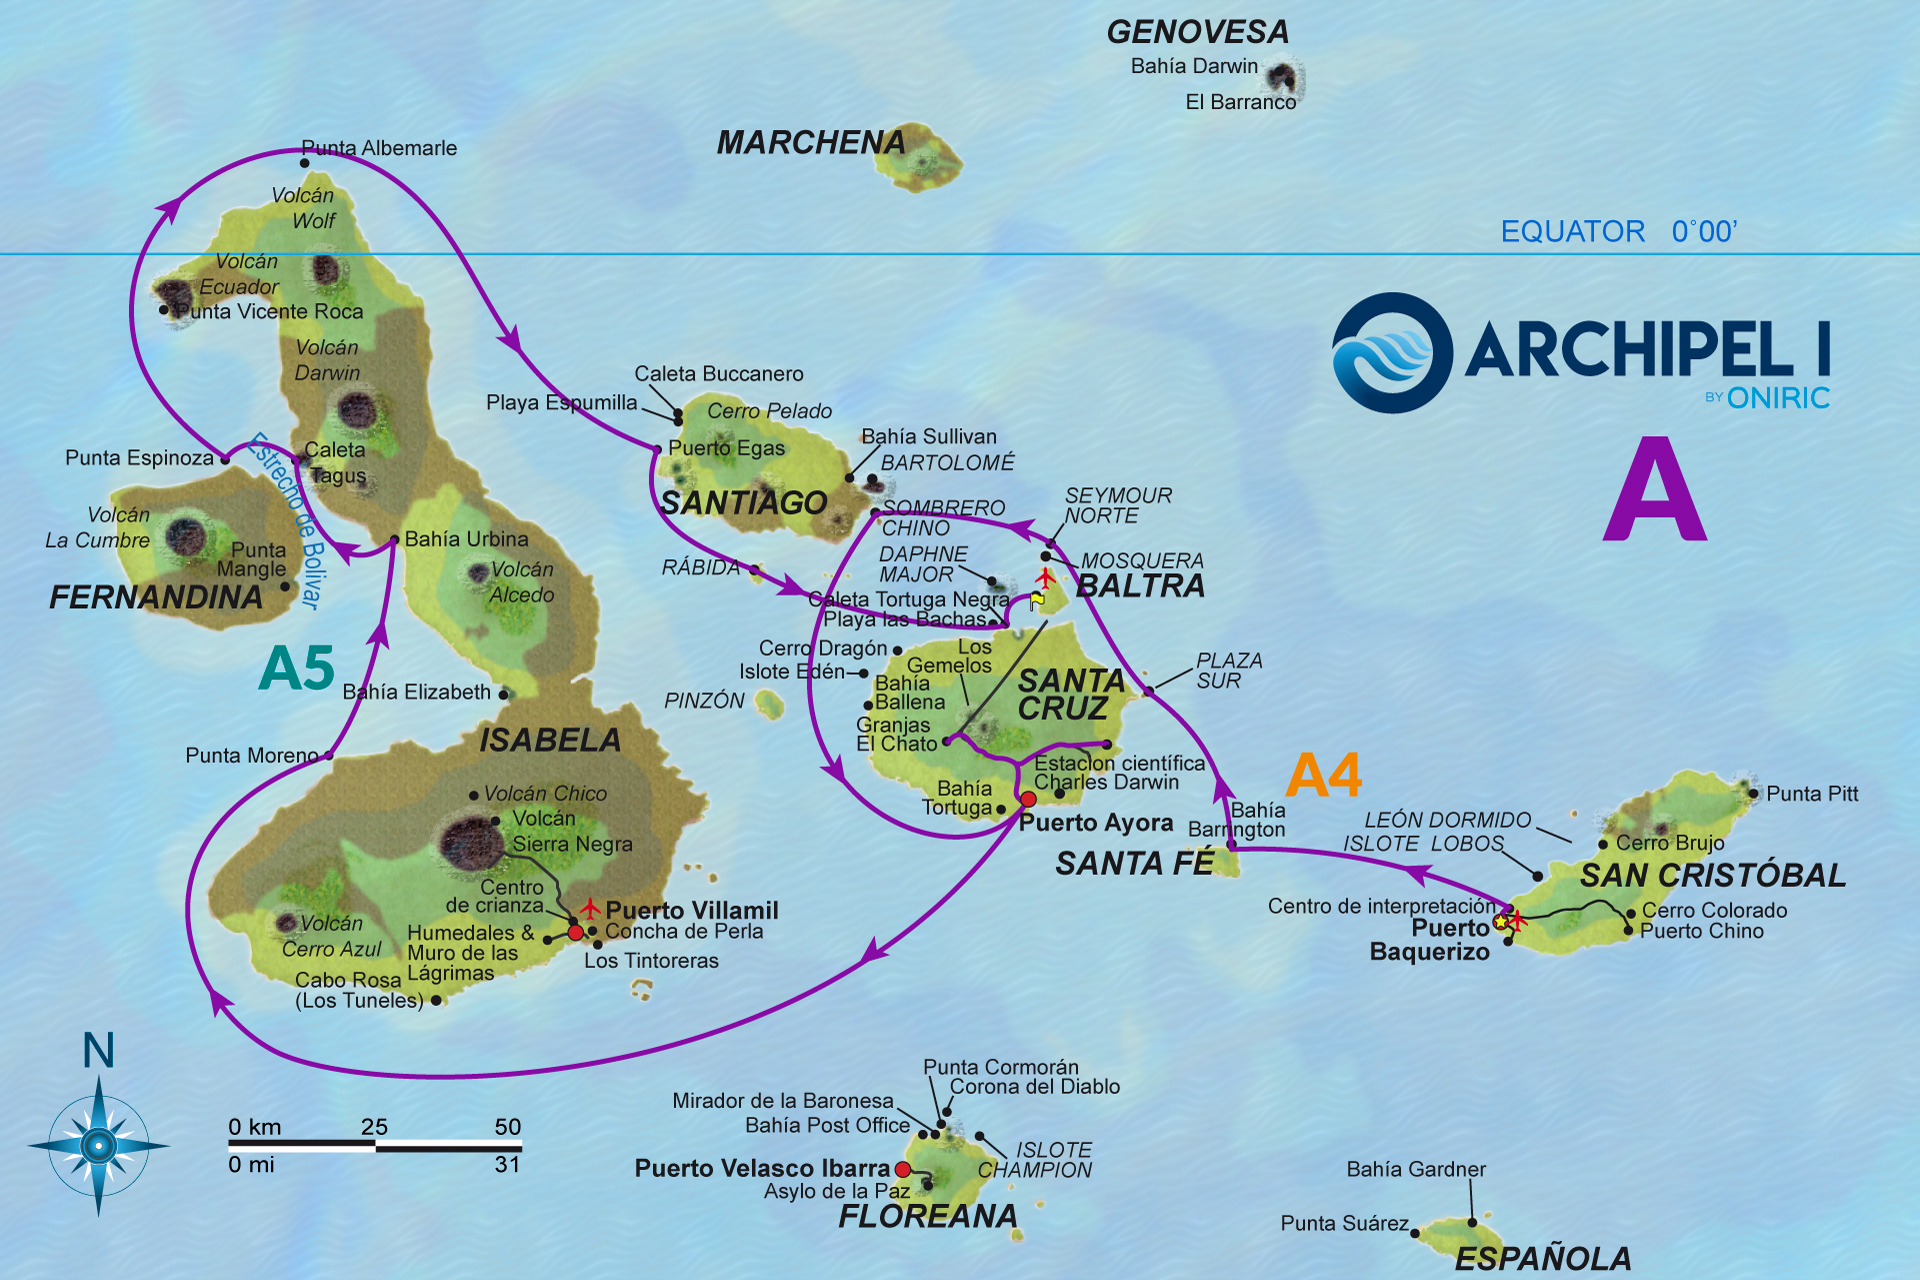 galapagos-mapa-archipel-1-A-oniric